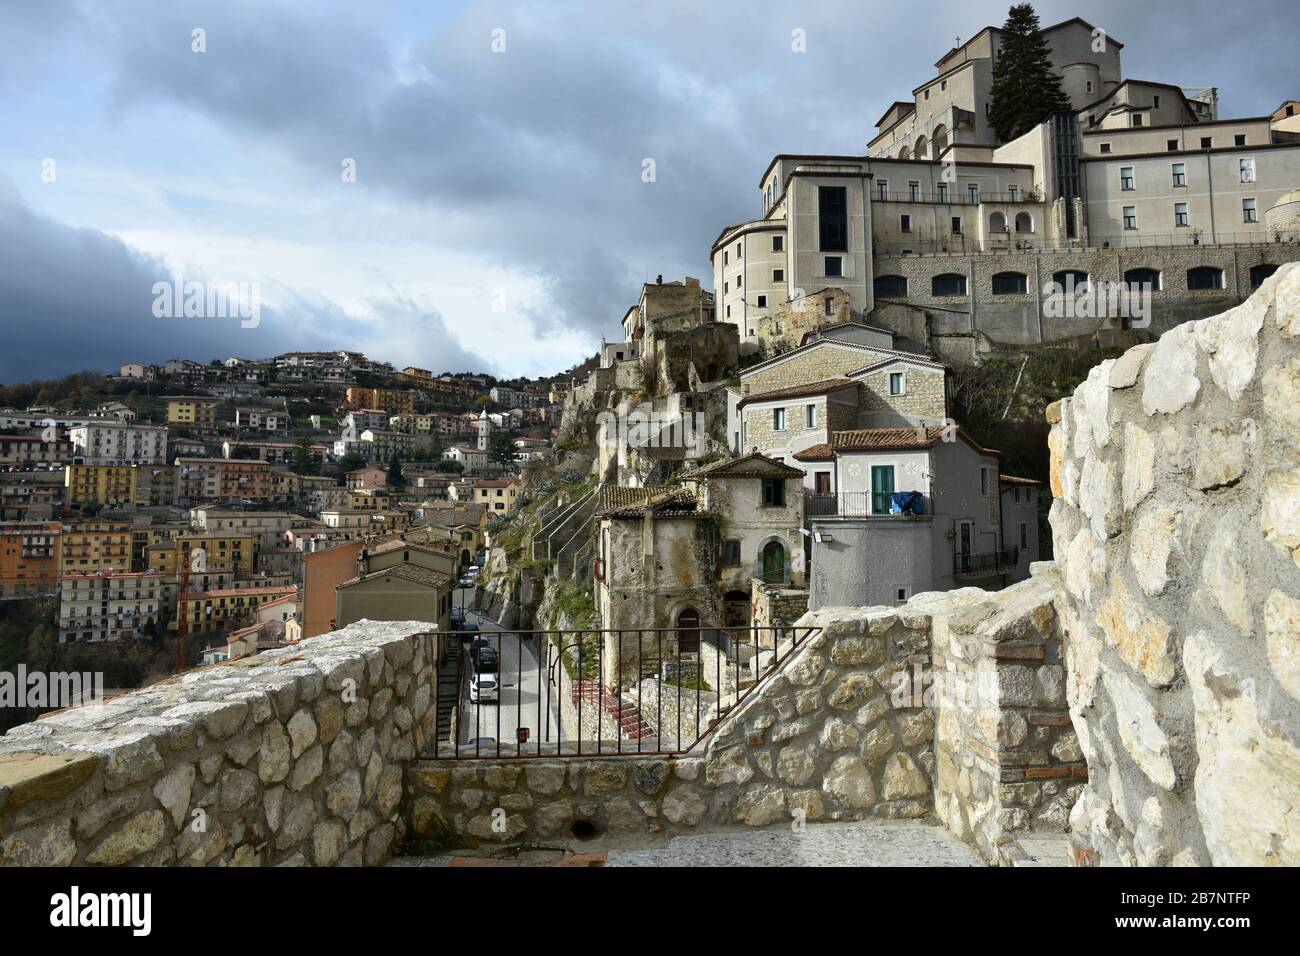 Un viaggio in un borgo medievale nel sud Italia: Muro Lucano Foto Stock